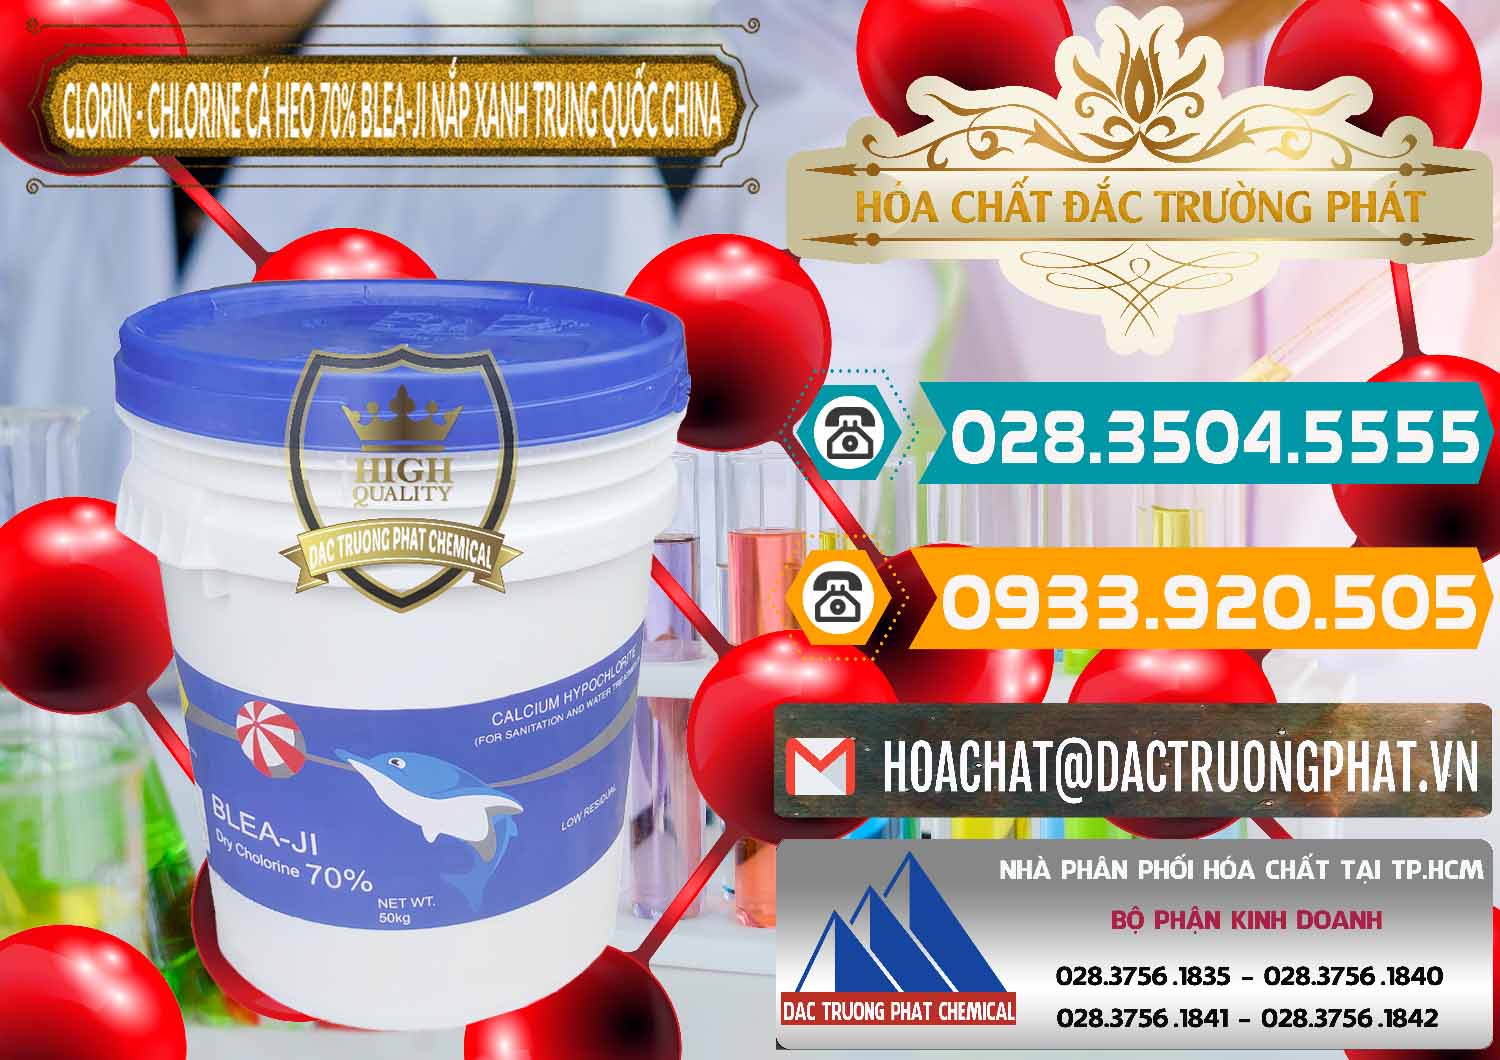 Bán _ phân phối Clorin - Chlorine Cá Heo 70% Cá Heo Blea-Ji Thùng Tròn Nắp Xanh Trung Quốc China - 0208 - Kinh doanh - phân phối hóa chất tại TP.HCM - congtyhoachat.vn